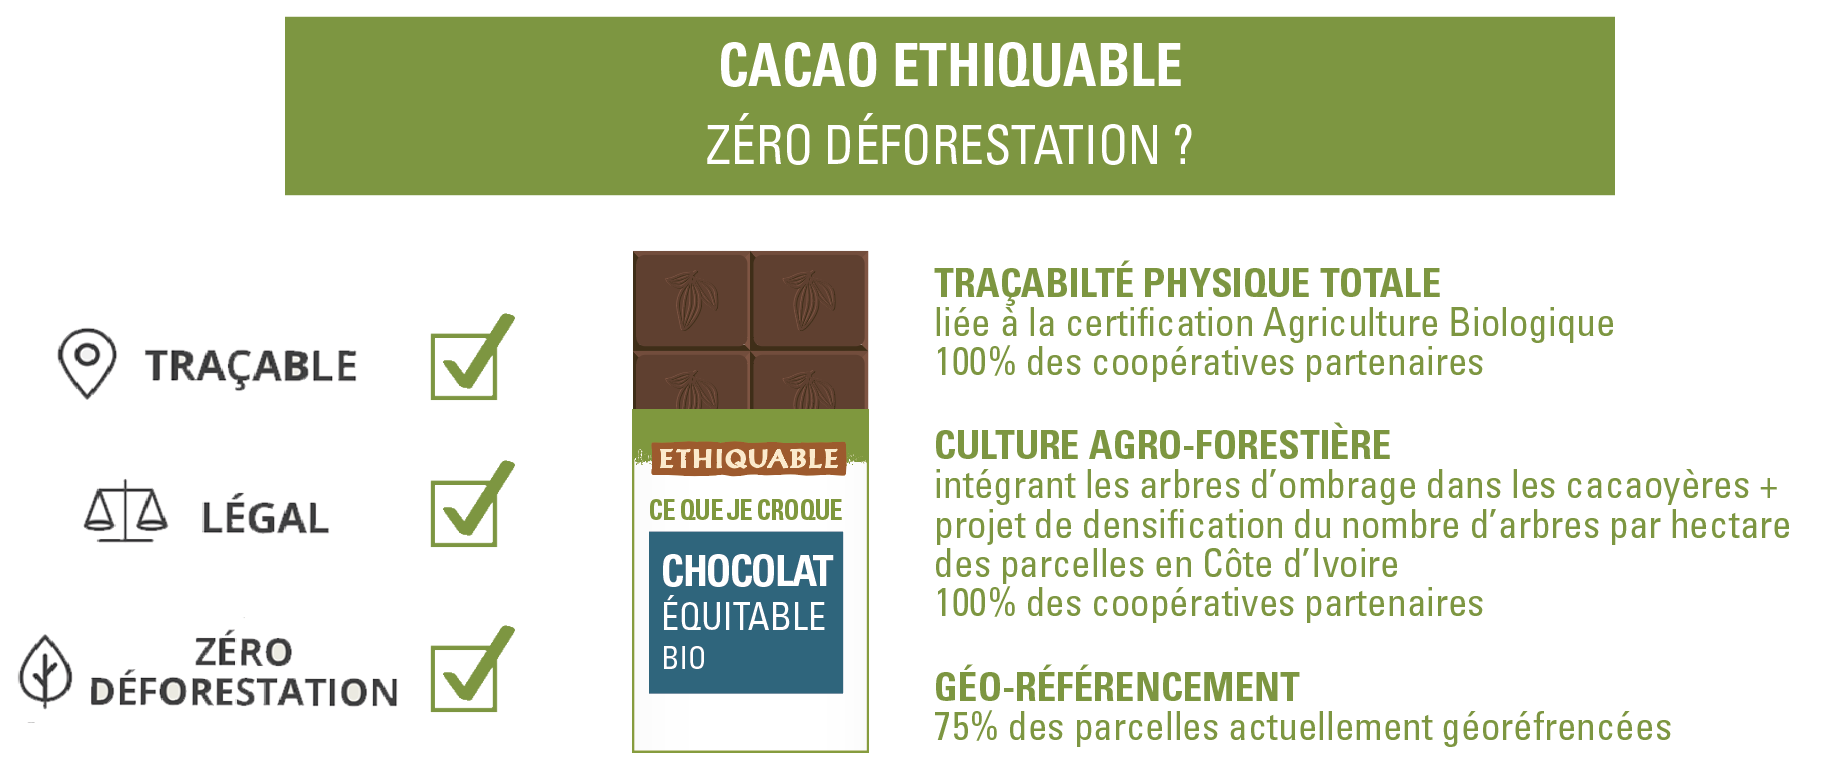 cacao ethiquable zéro déforestation